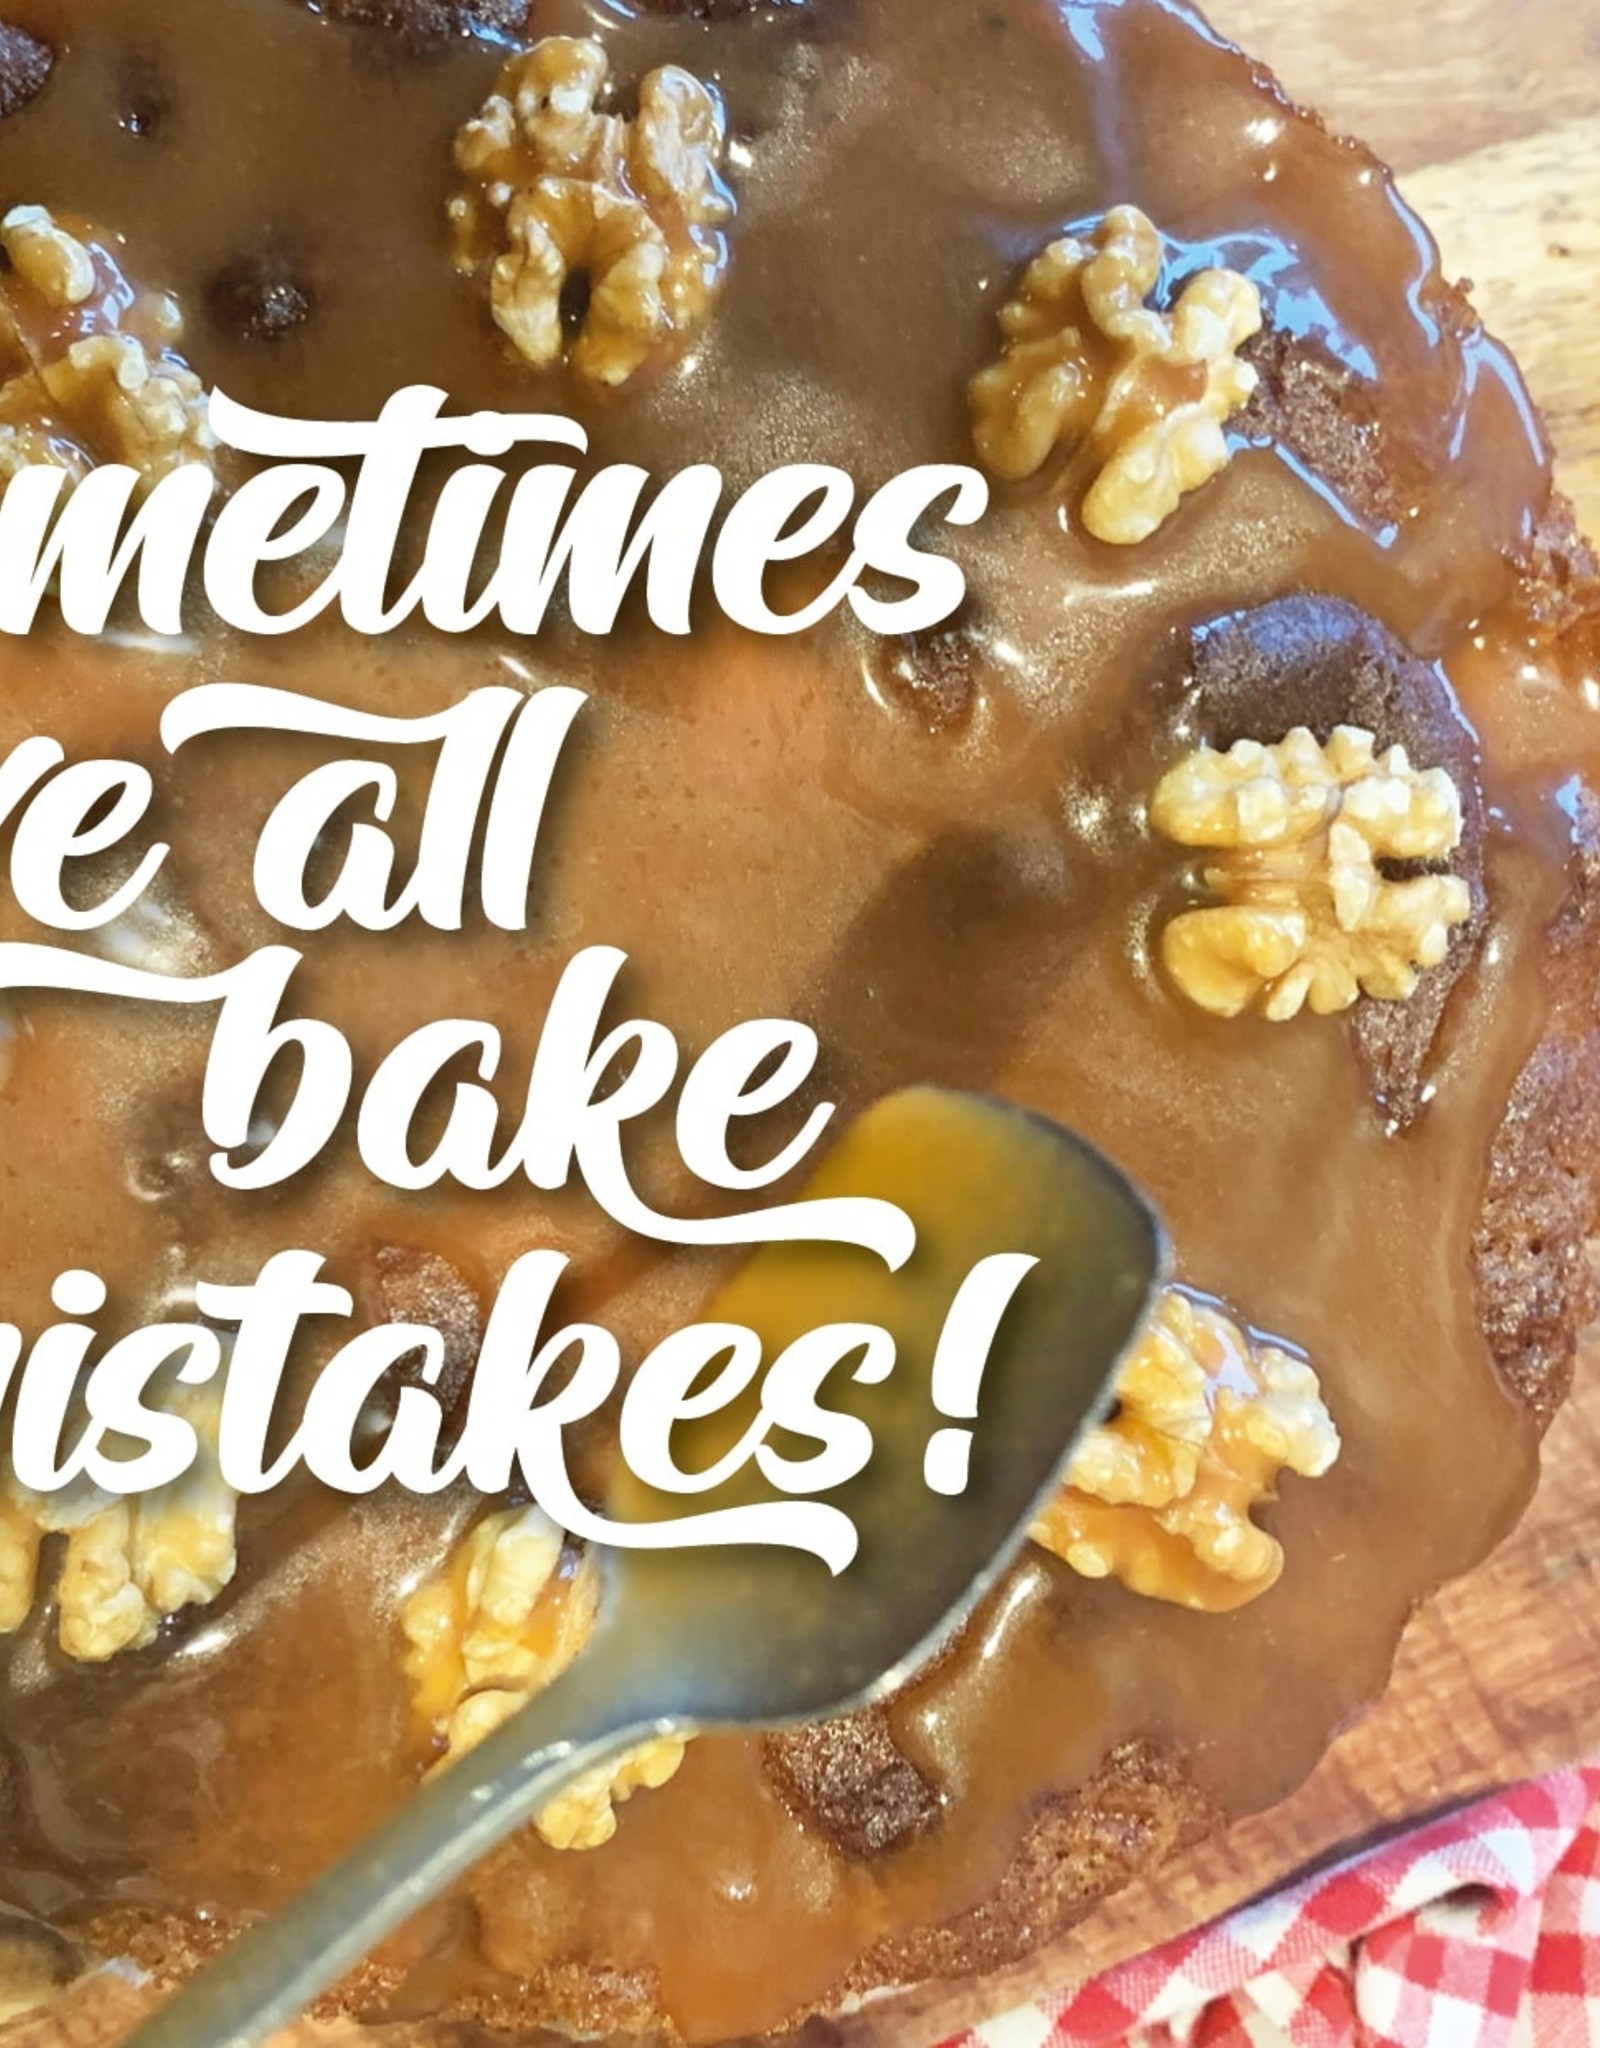 Wenskaart "Sometimes, we all bake mistakes"